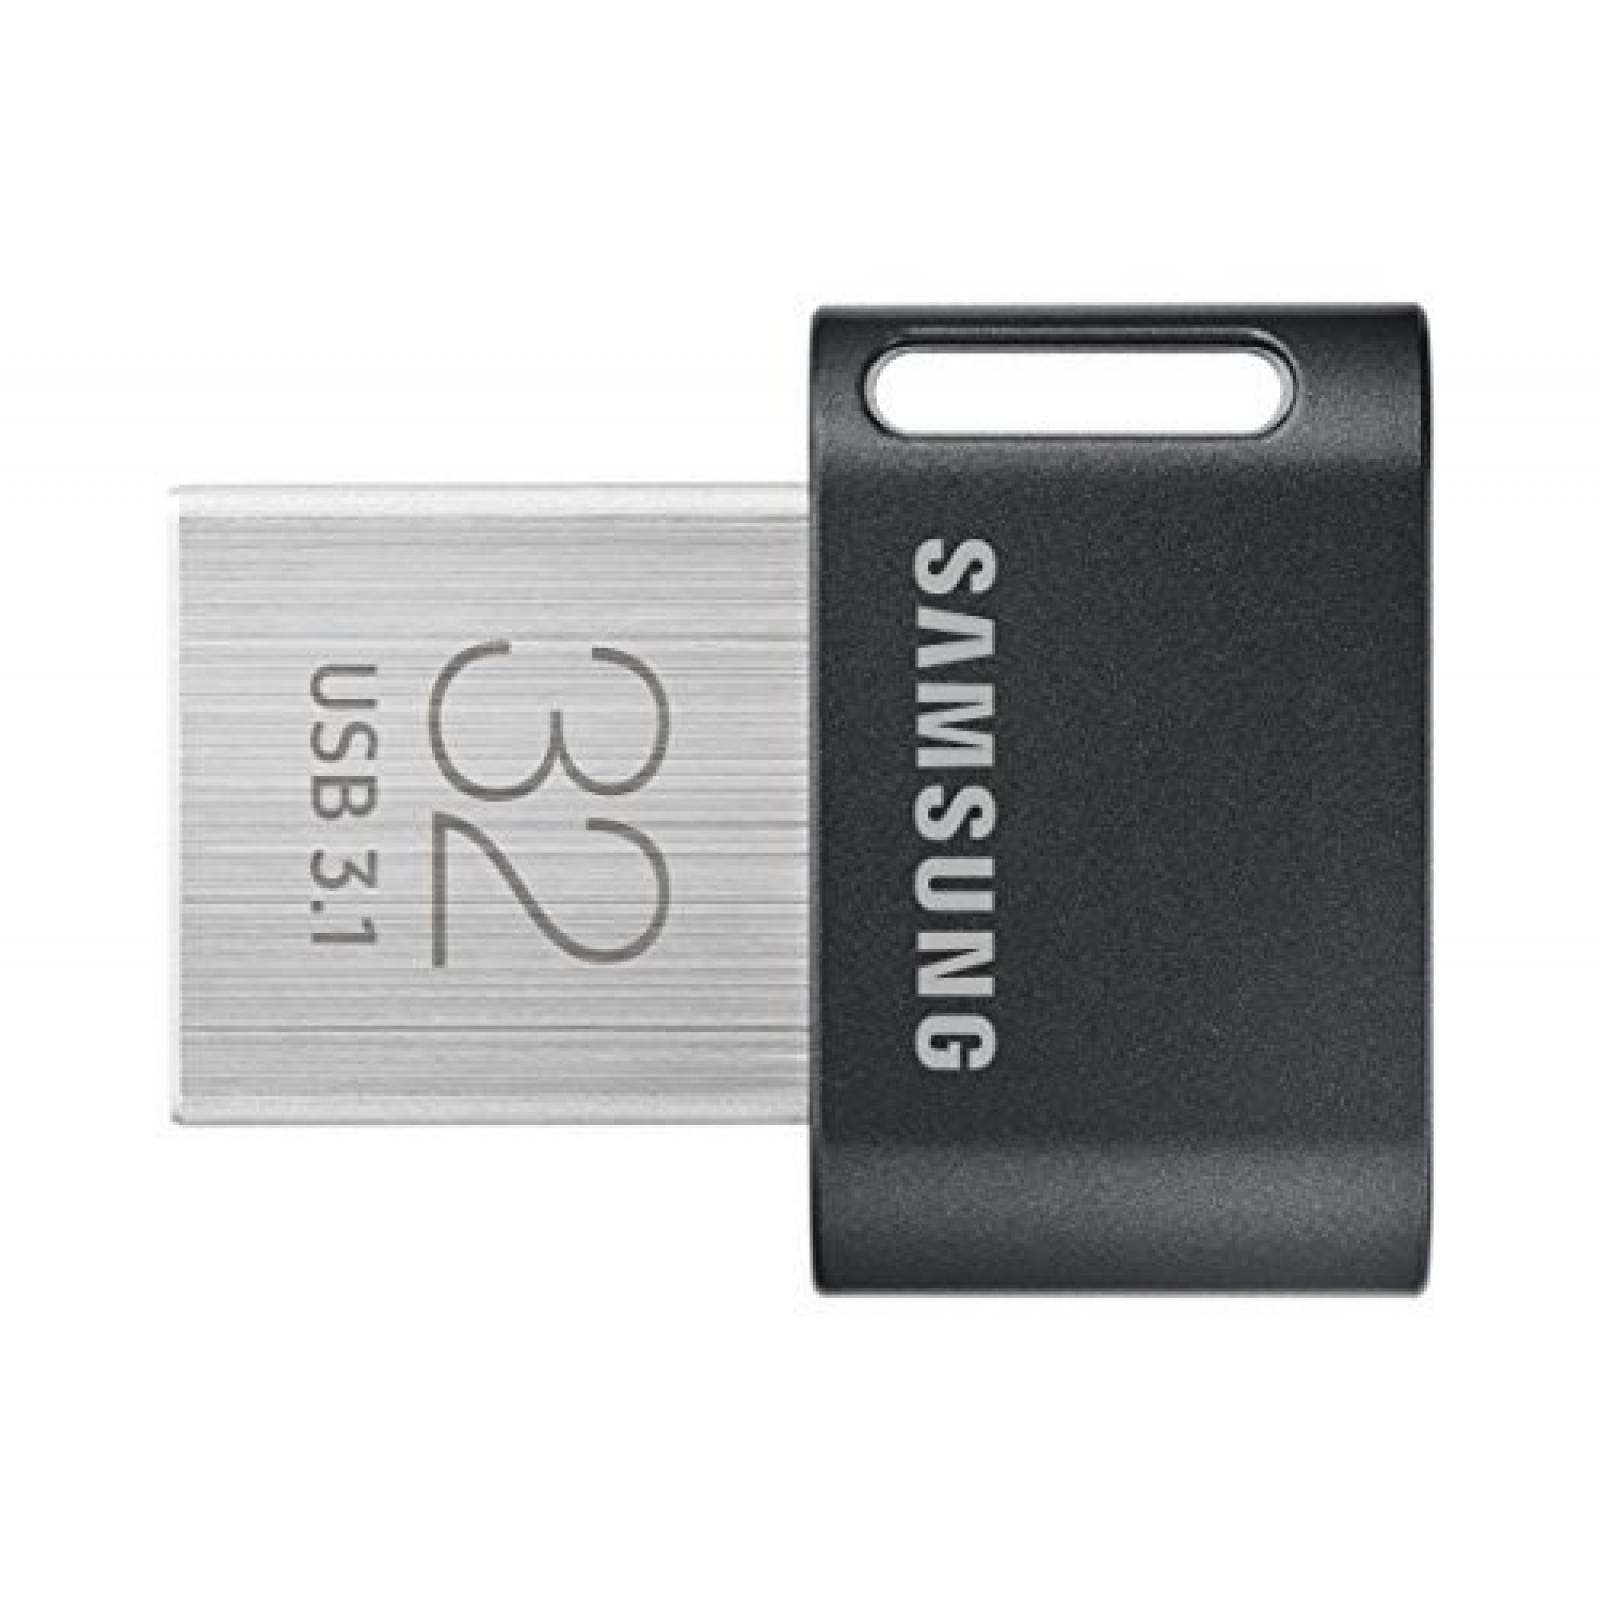 Unidad de USB Flash Samsung MUF-32AB / AM FIT 32GB USB 3.1